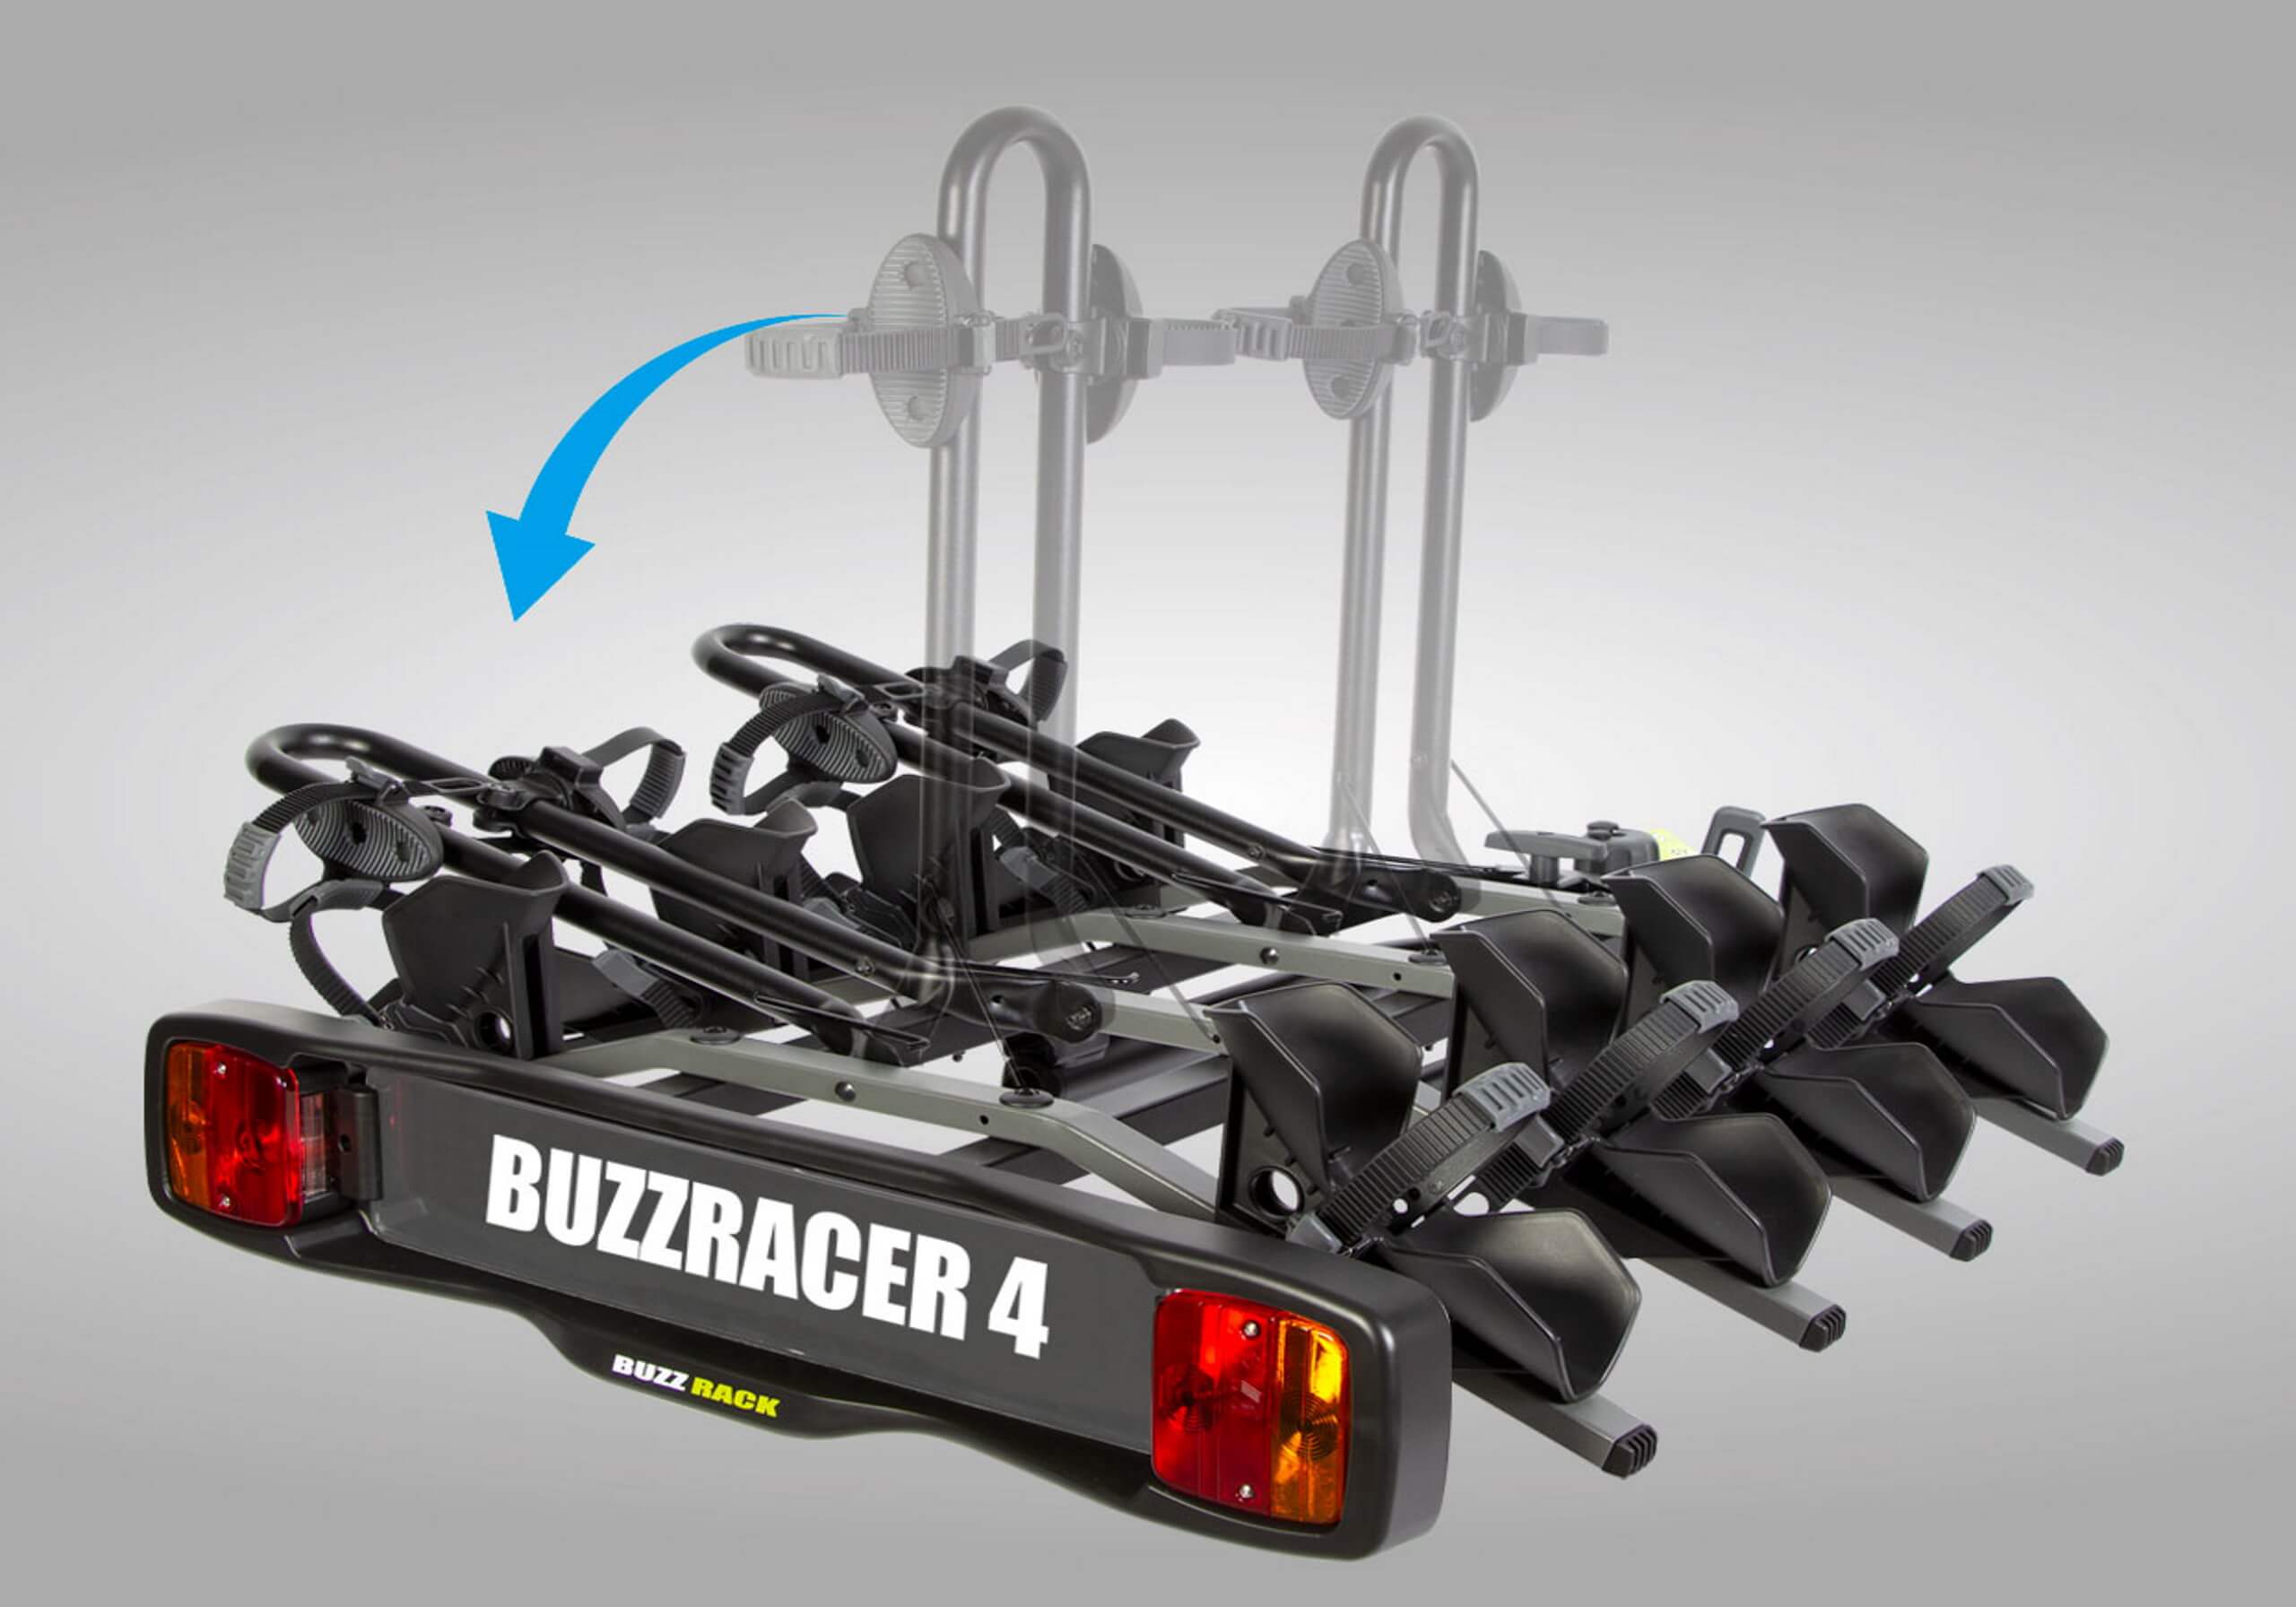 BUZZ RACK BuzzRacer 4 - 4 bike wheel support rack no. BRP334